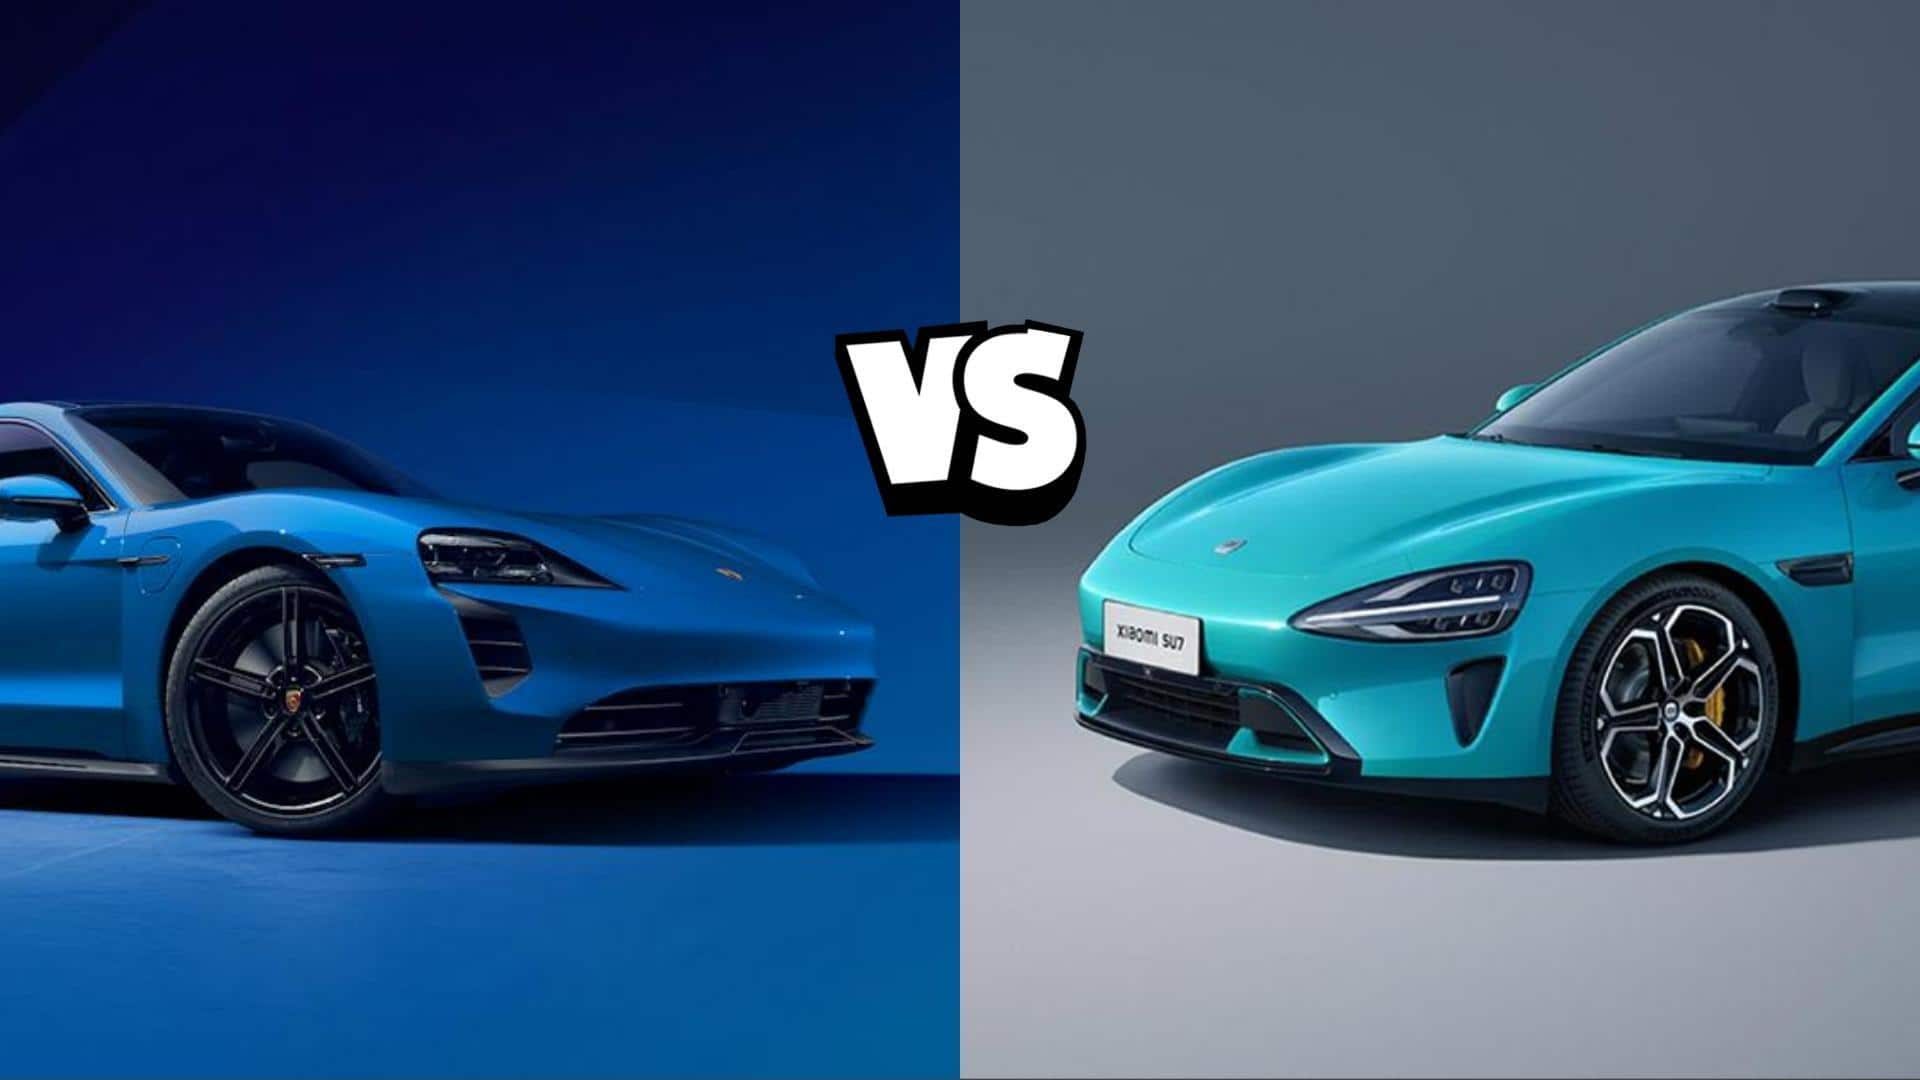 Xiaomi SU7 vs Porsche Taycan: Which EV is better